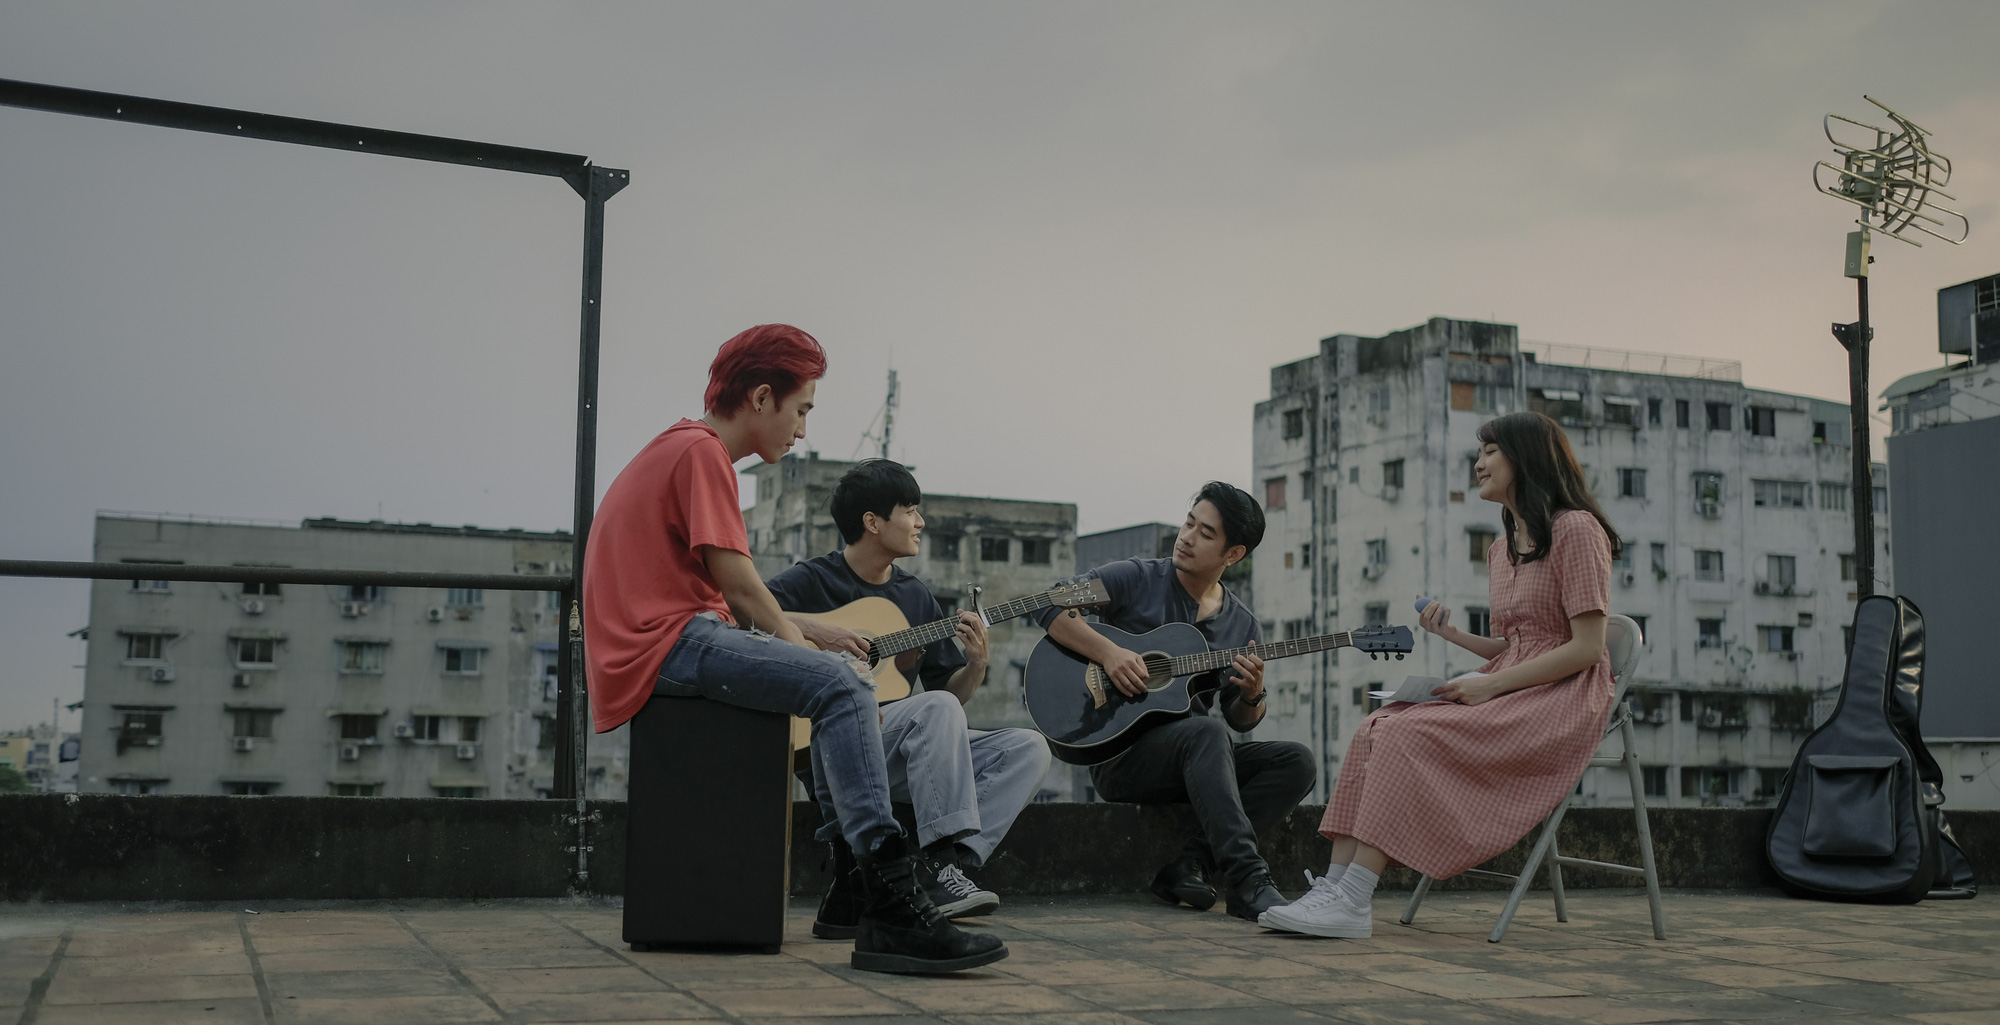 Sài Gòn Trong Cơn Mưa: Thước phim non trẻ đầy cảm xúc dành cho "những kẻ  khờ mộng mơ"